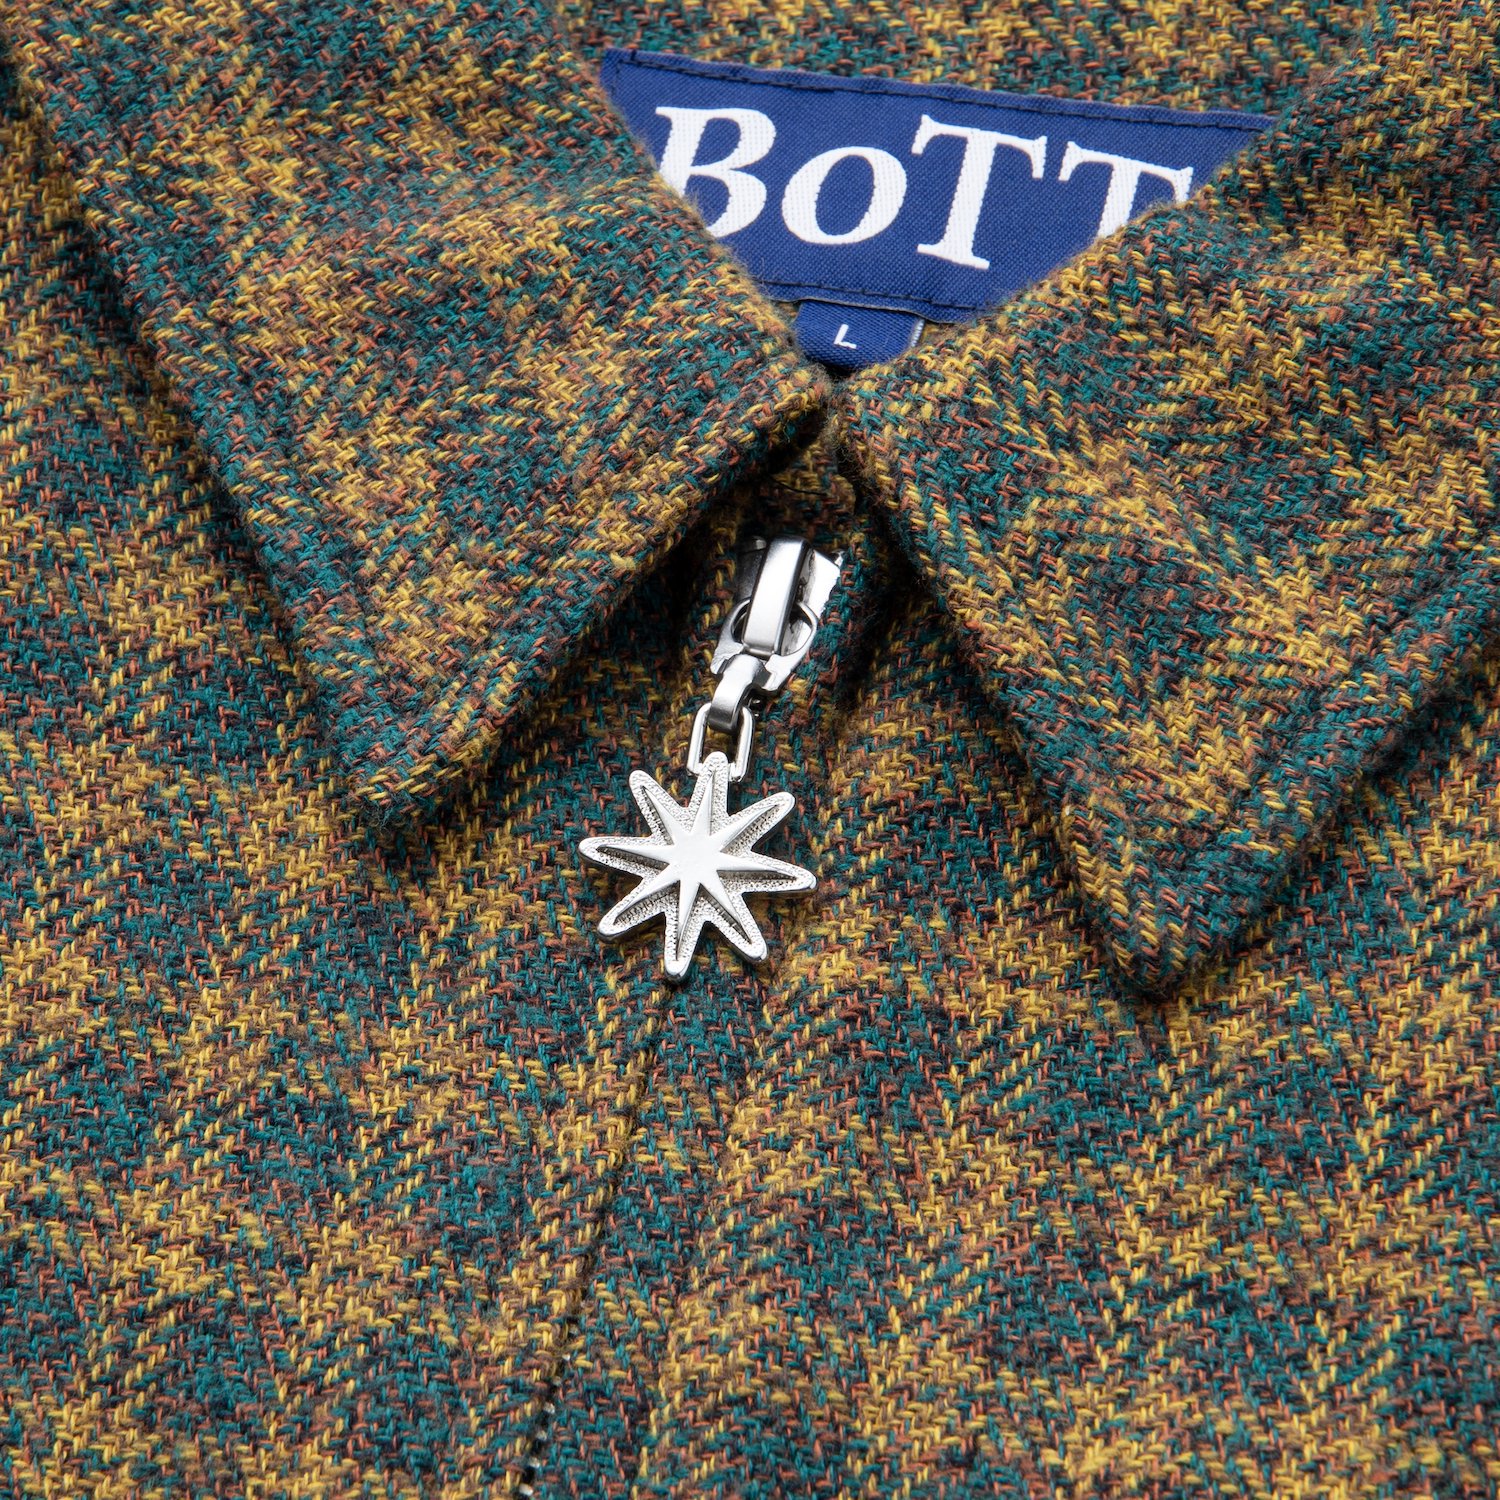 BoTTZip Up Flannel Shirt - Apple Butter Store